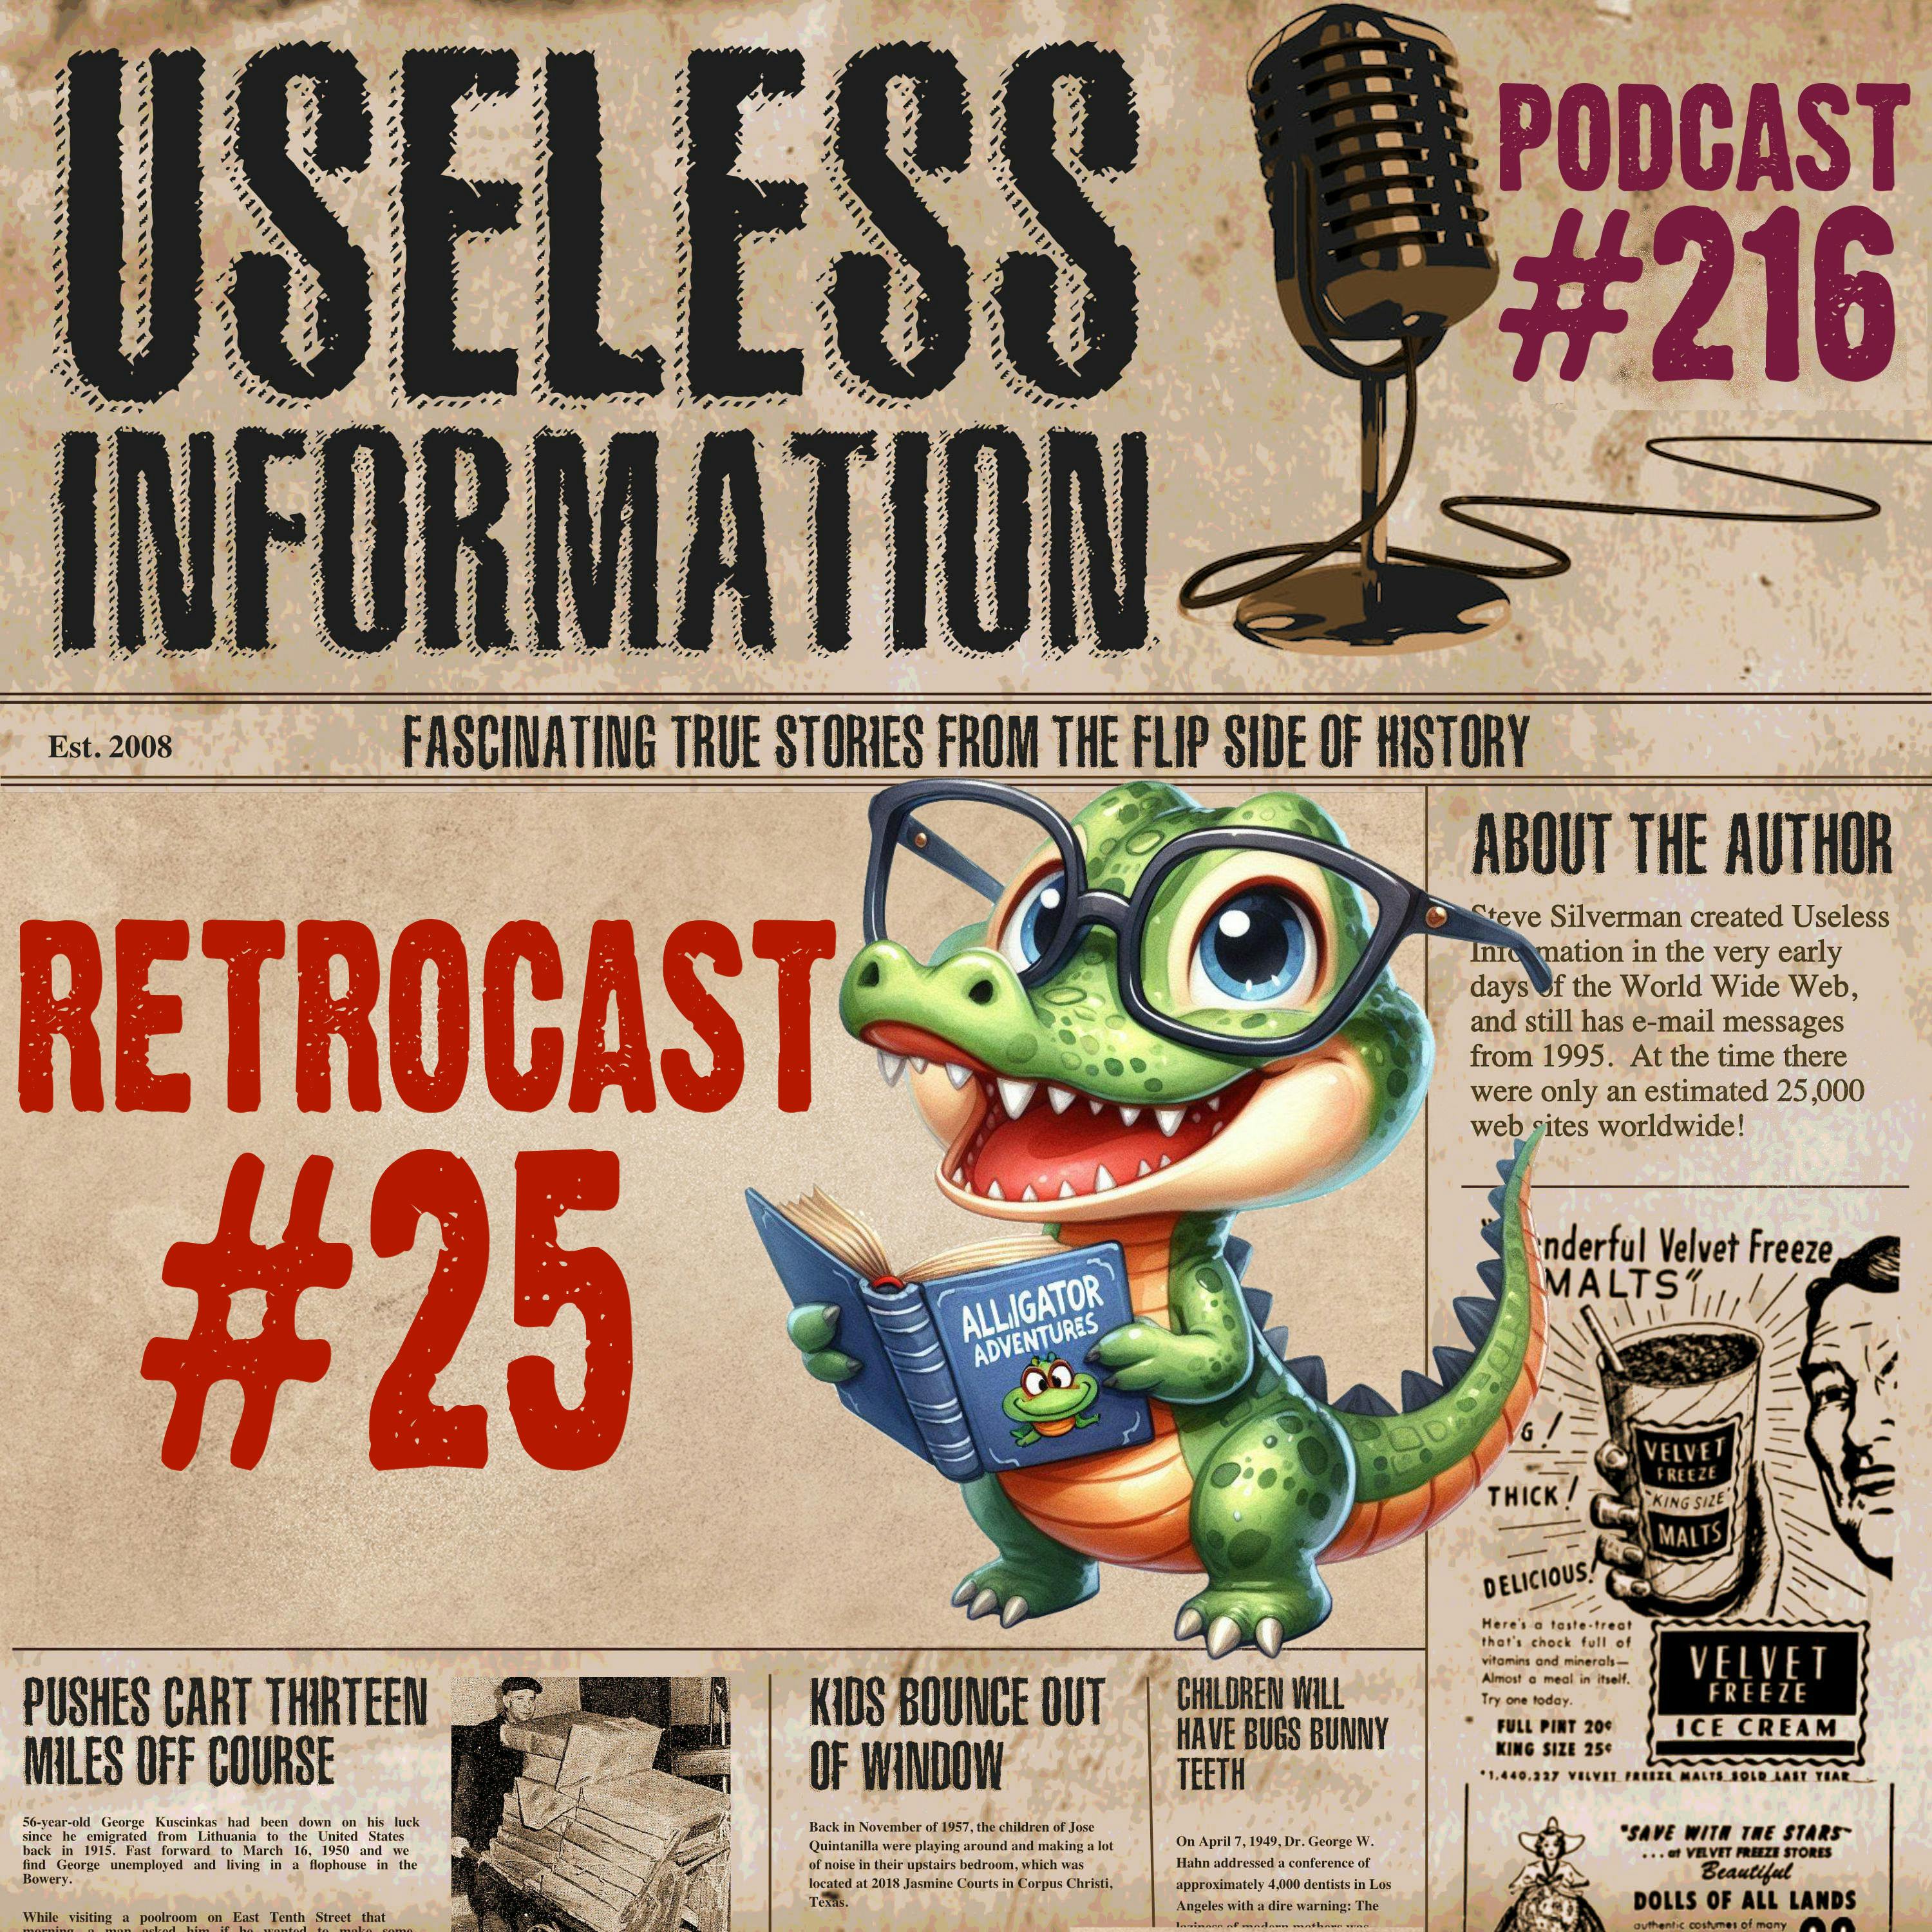 Retrocast #25 - UI Podcast #216